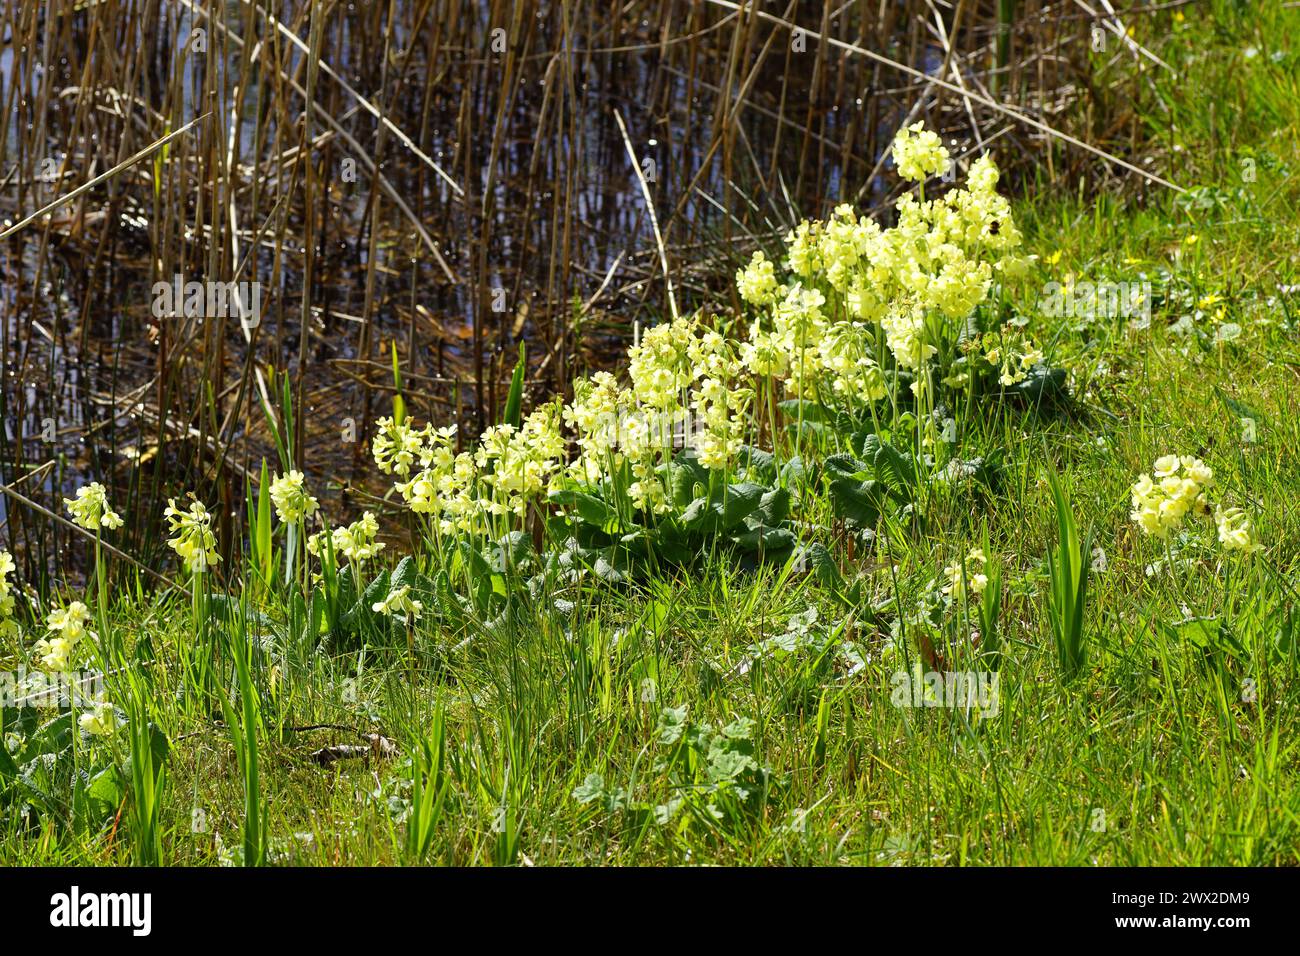 Gros plan fleurs jaunes de la vraie oxlipe (Primula elatior), primmulacée de la famille des primevères dans l'herbe au bord de l'eau avec de vieux roseaux. Printemps, mars Banque D'Images